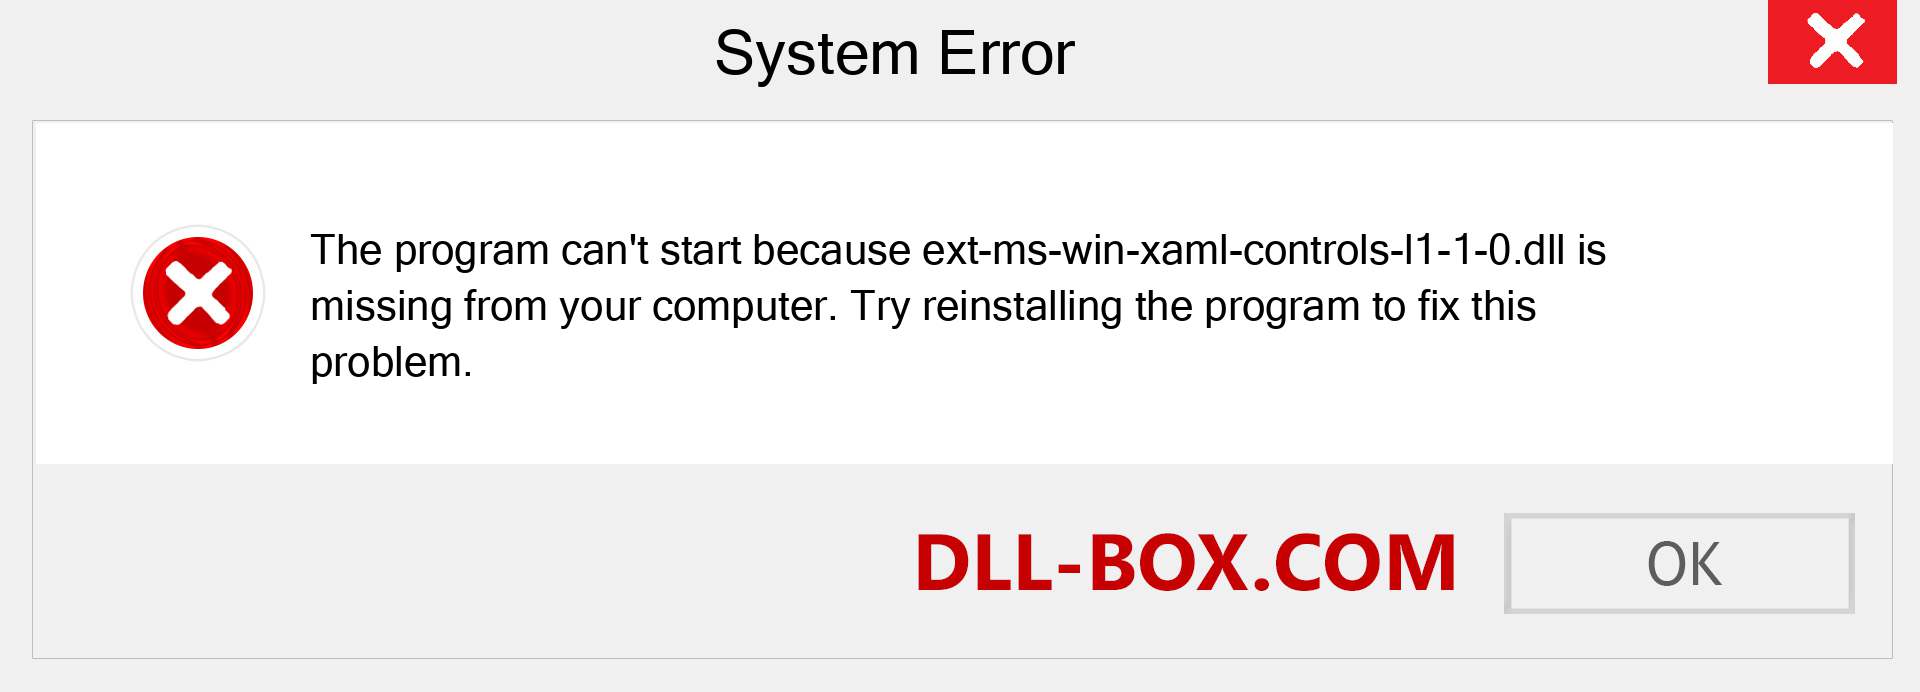  ext-ms-win-xaml-controls-l1-1-0.dll file is missing?. Download for Windows 7, 8, 10 - Fix  ext-ms-win-xaml-controls-l1-1-0 dll Missing Error on Windows, photos, images